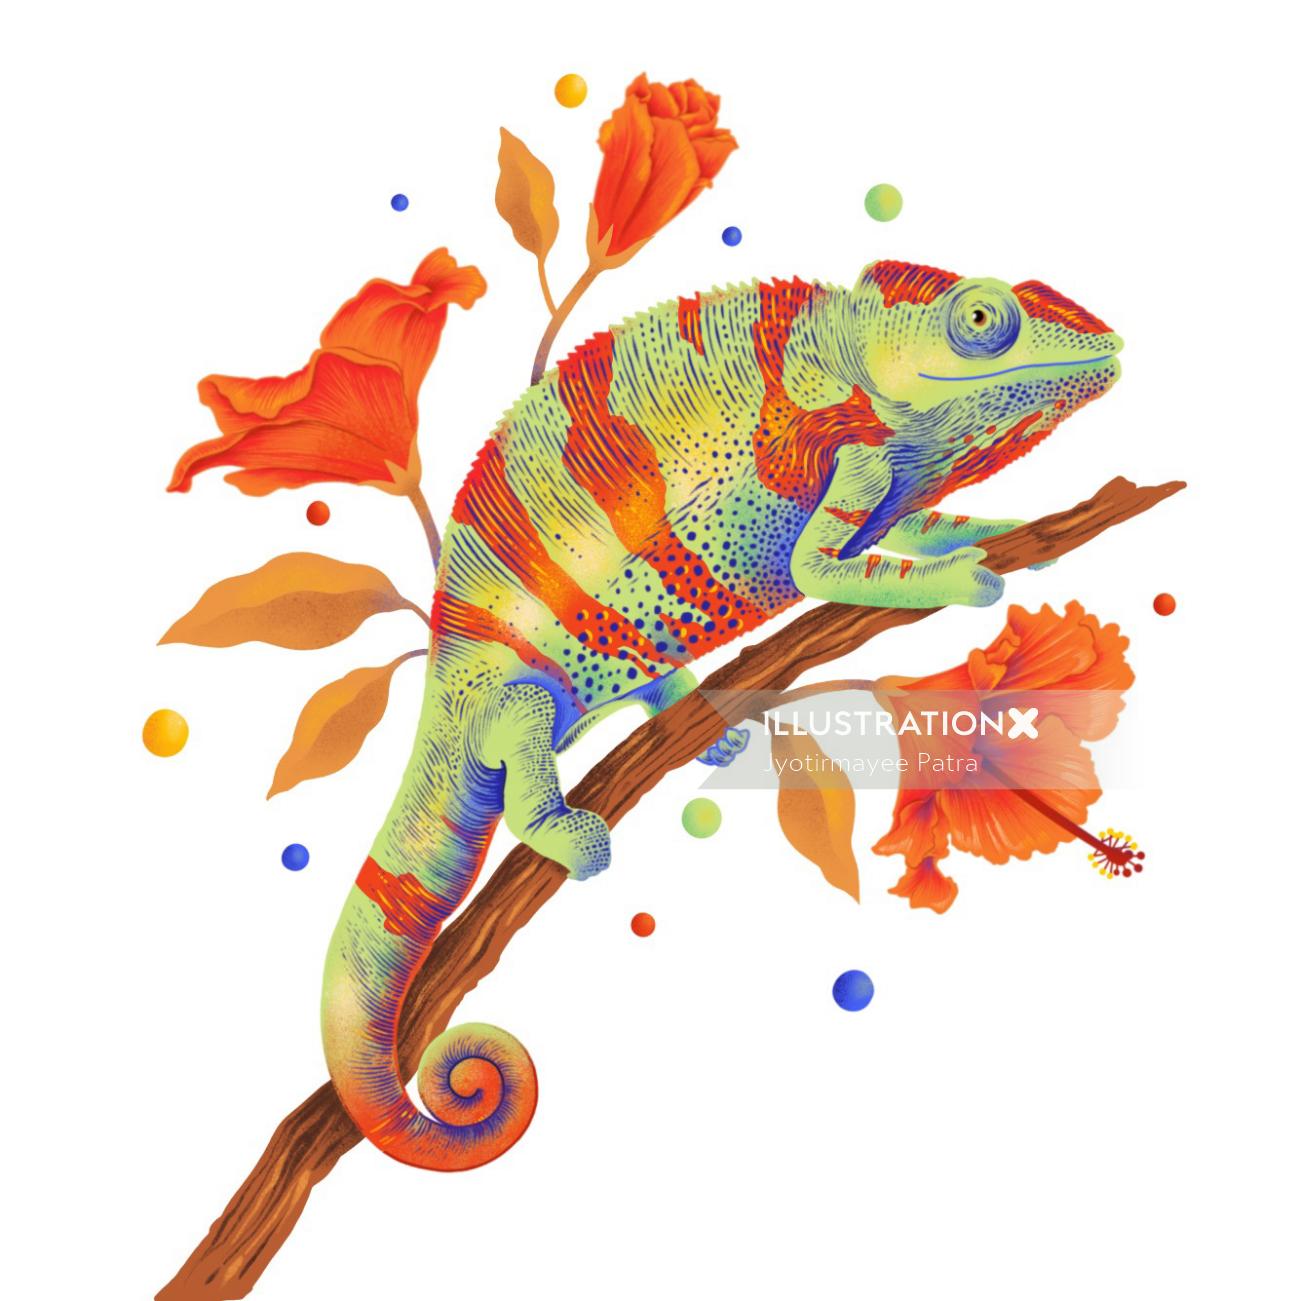 Illustration de caméléon avec des couleurs vibrantes et des textures graphiques